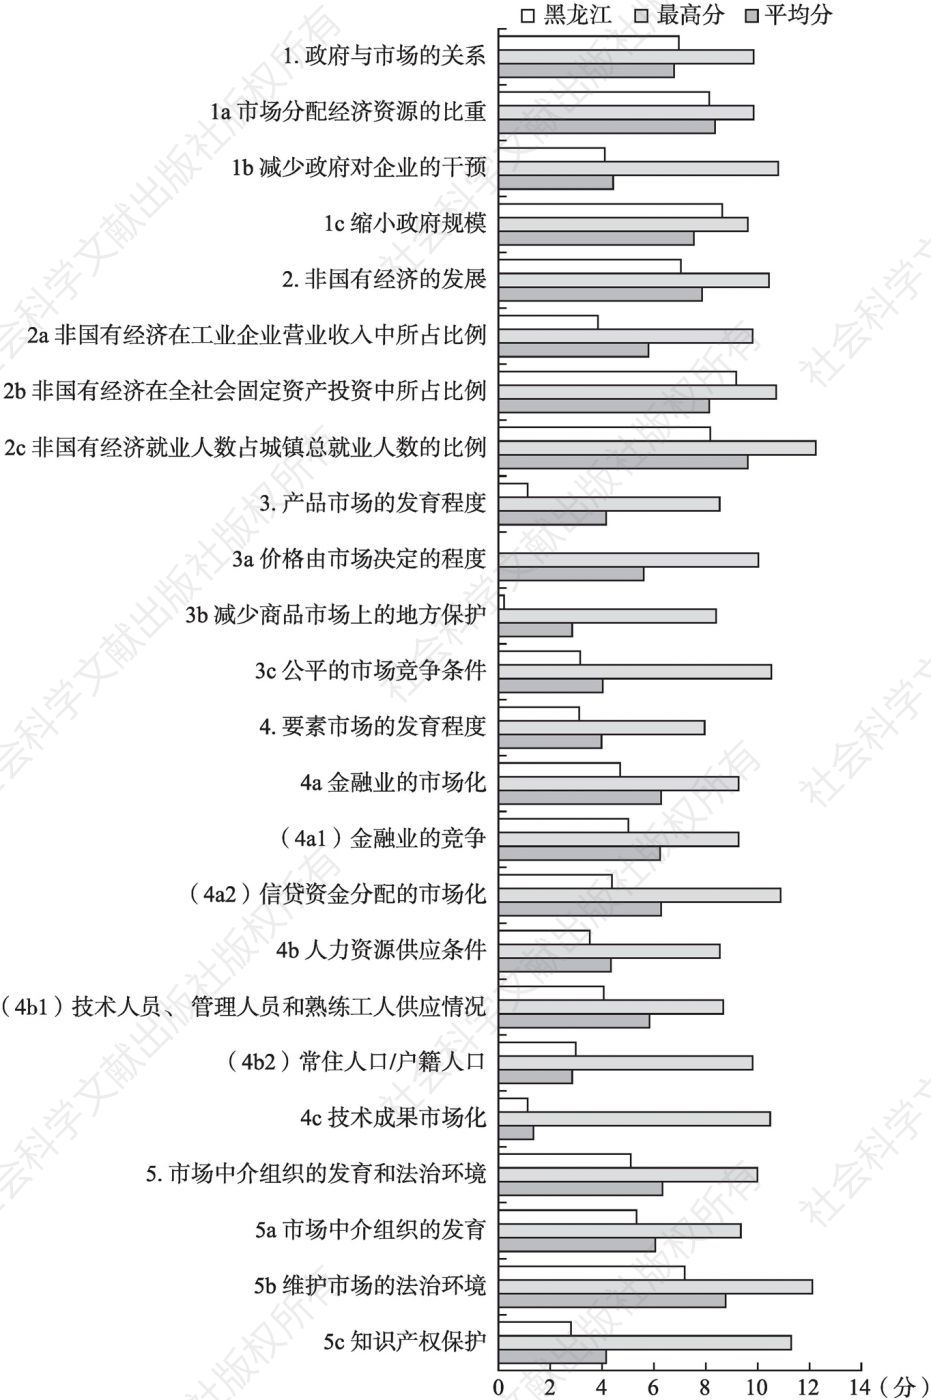 2019年黑龙江市场化各方面指数和分项指数与全国最高分及平均分的比较